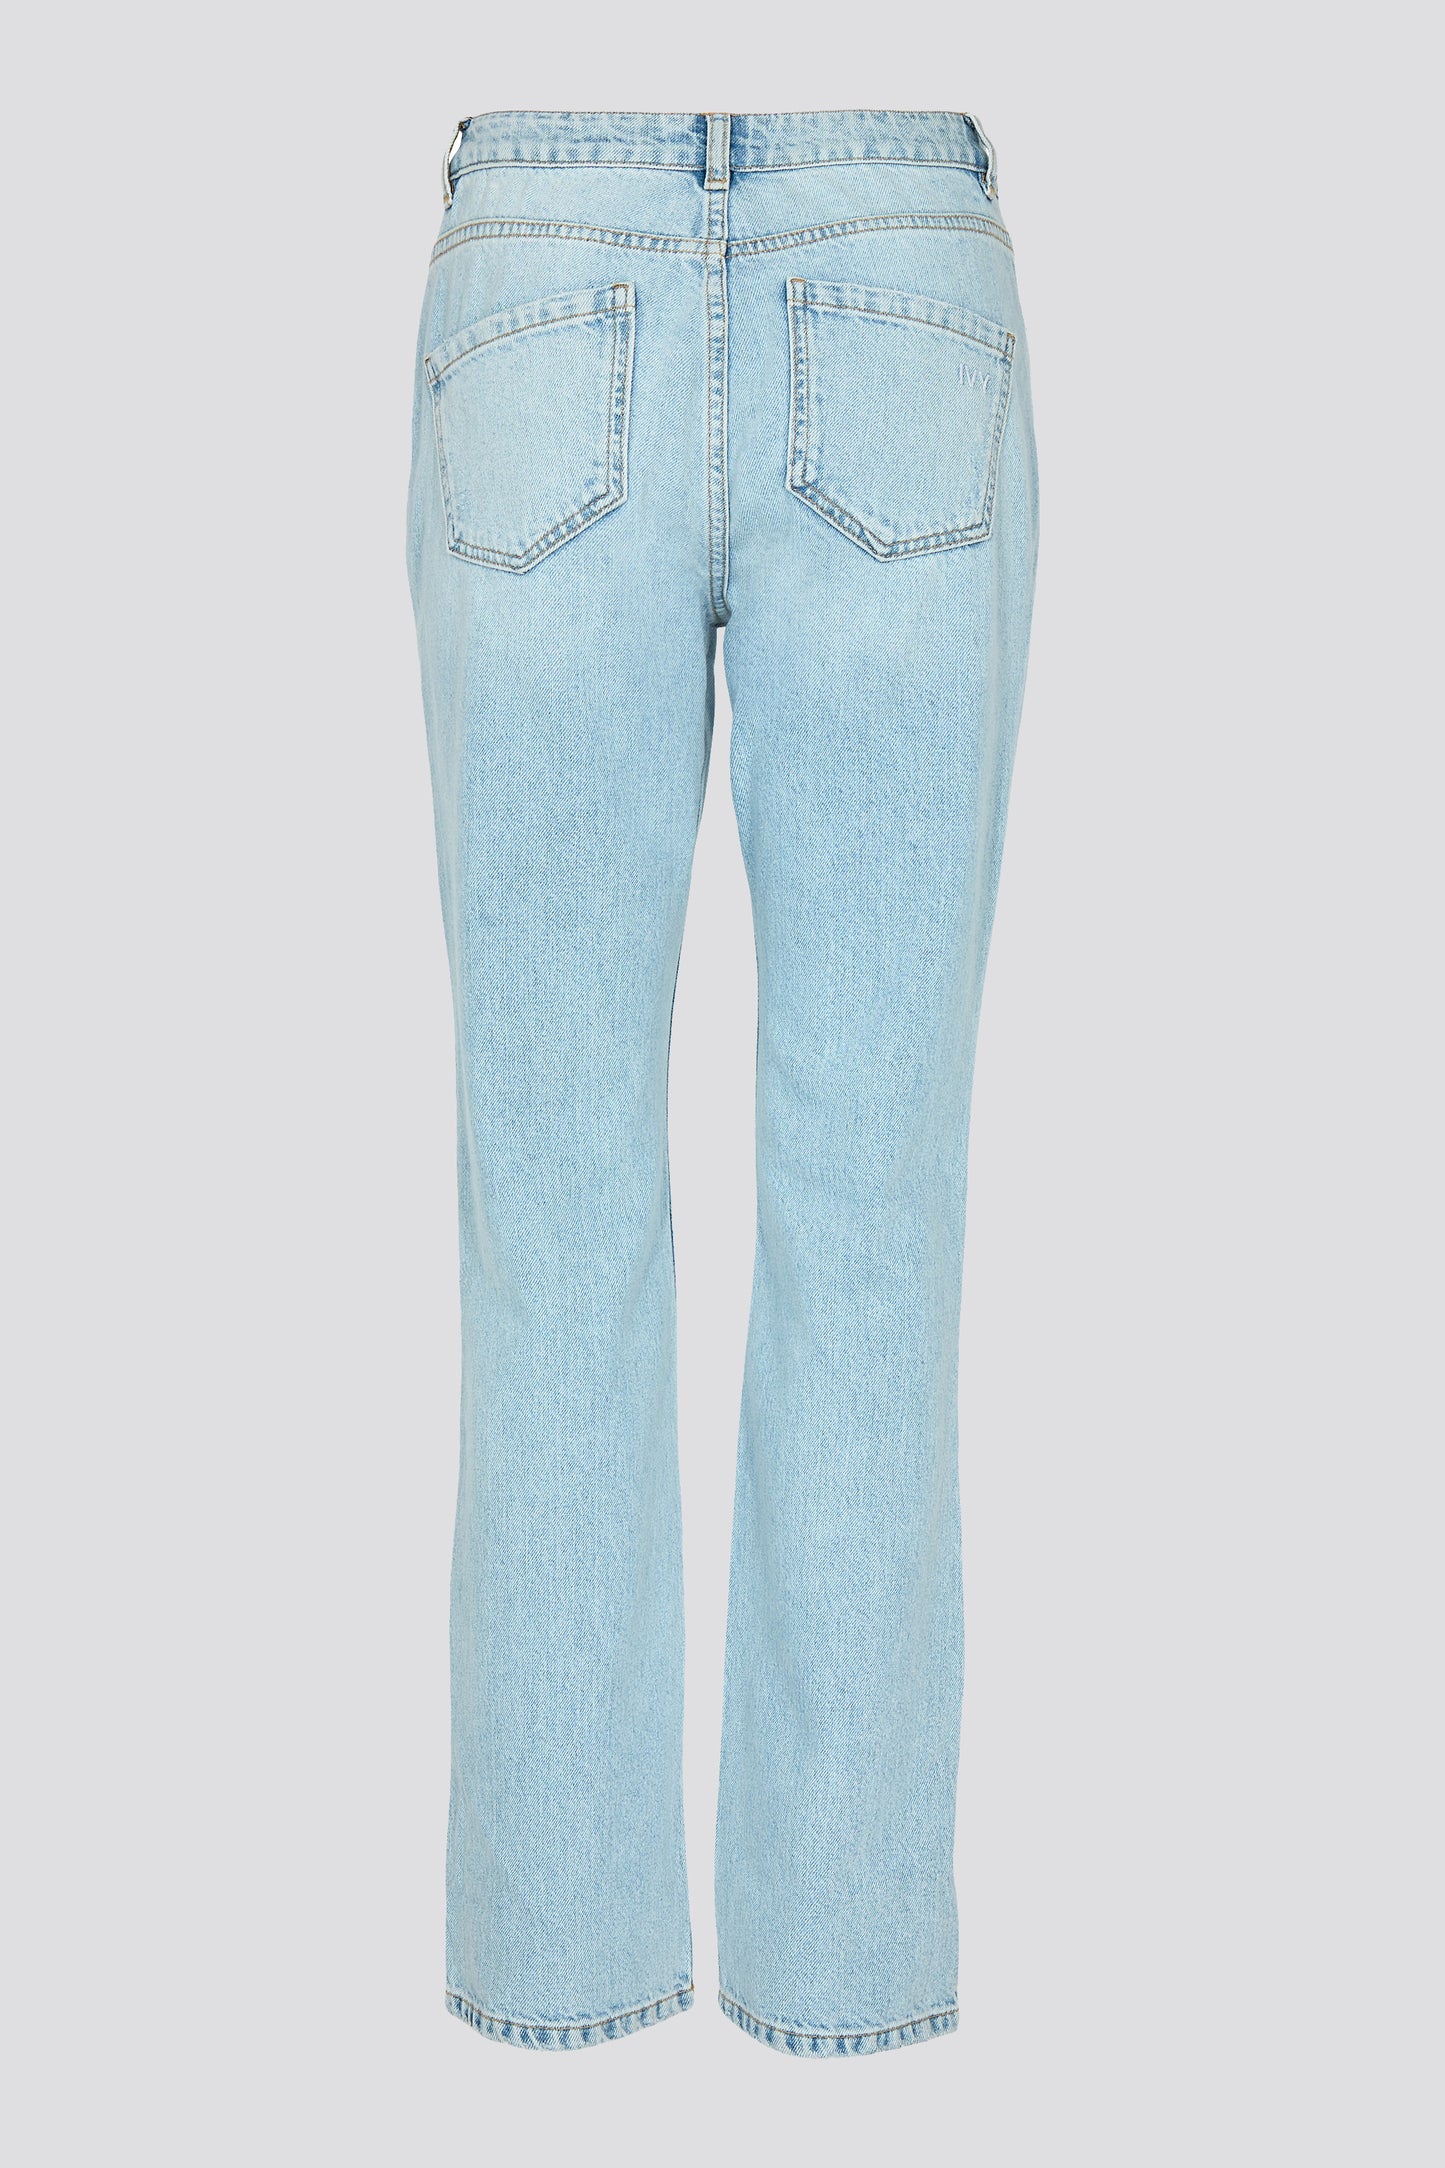 IVY Copenhagen IVY-Lulu Jeans Wash Puerto Banus Jeans & Pants 51 Denim Blue